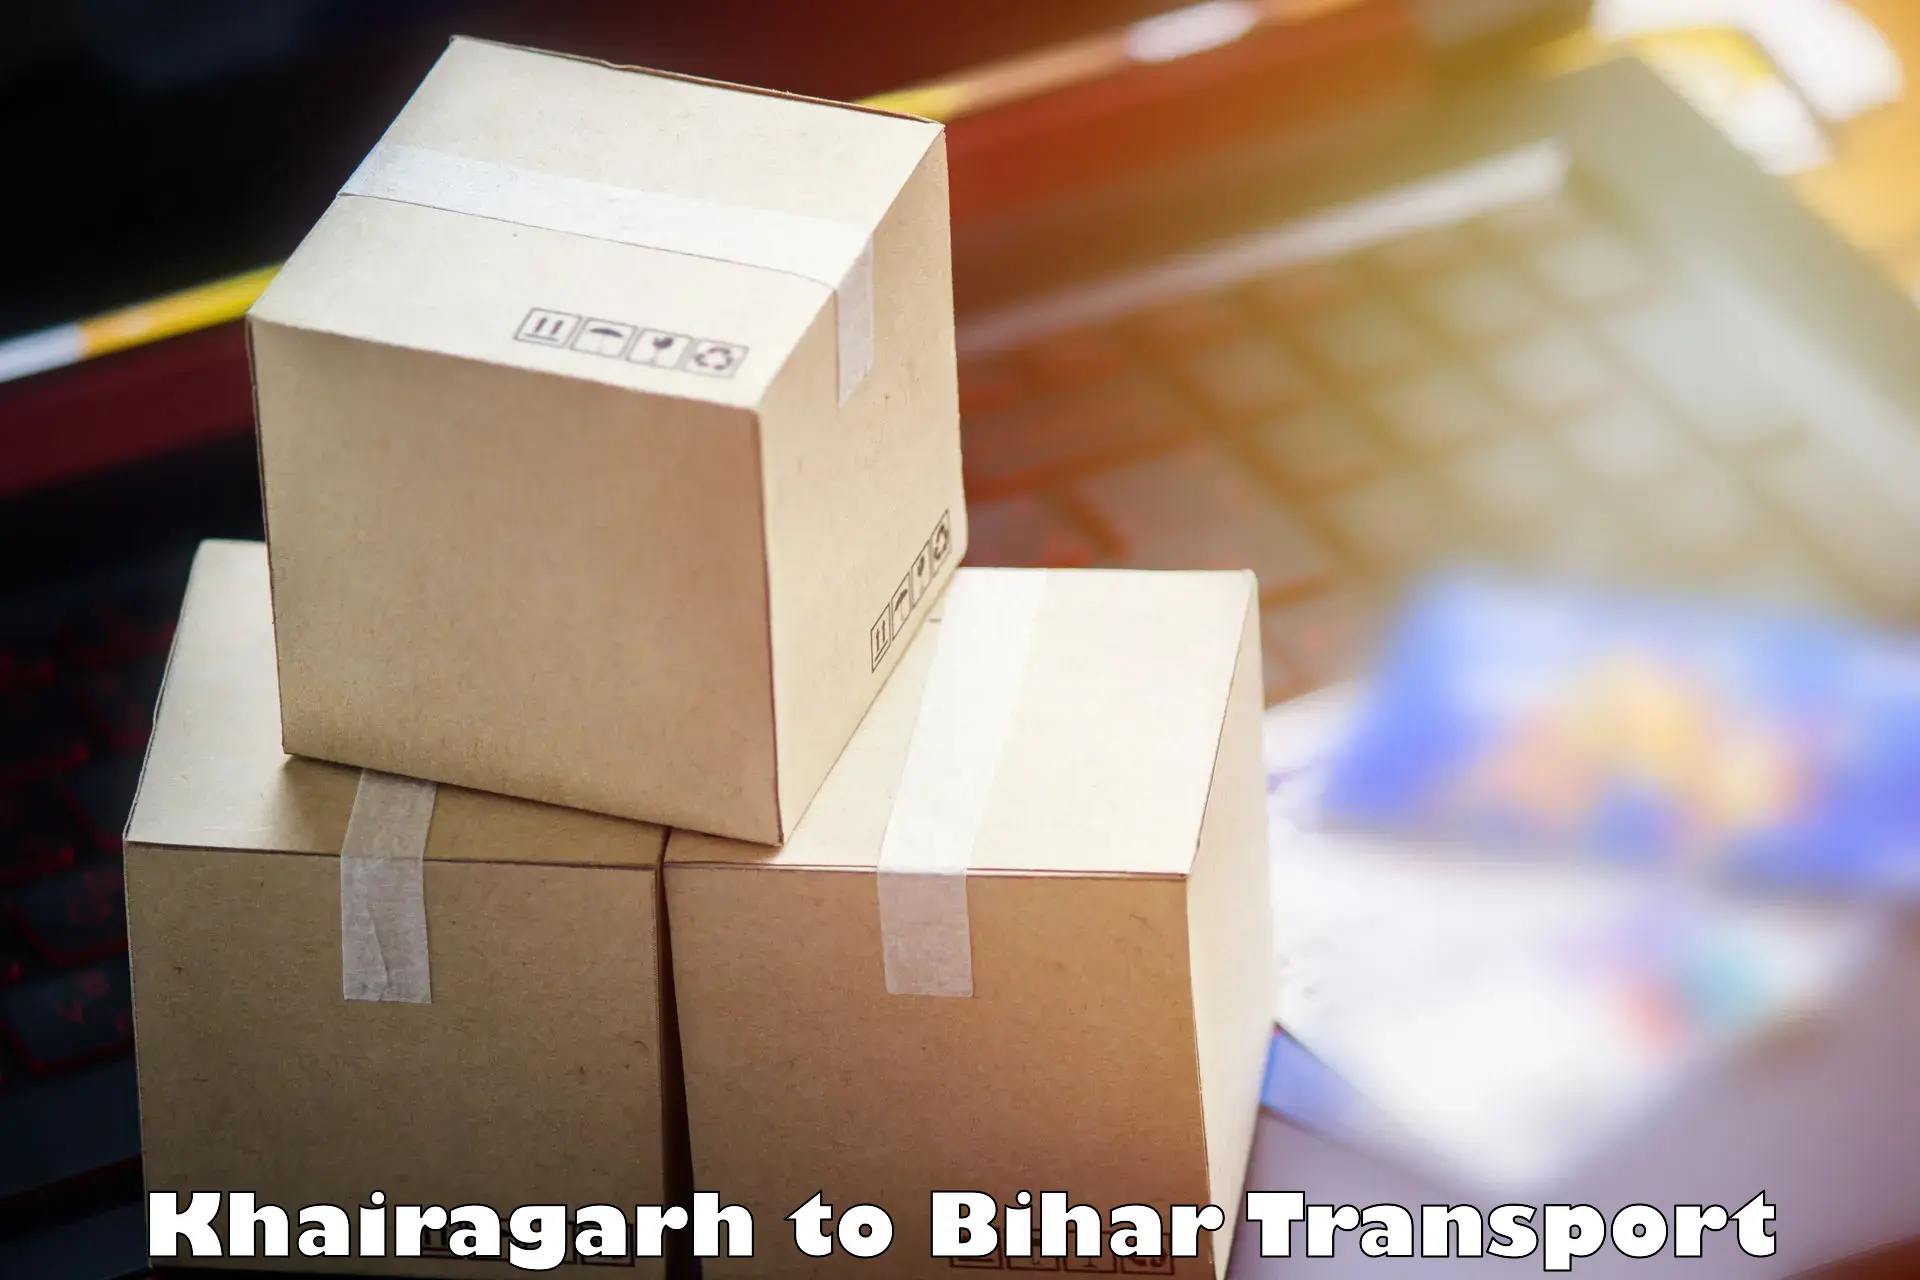 Nearest transport service Khairagarh to Kharagpur Munger